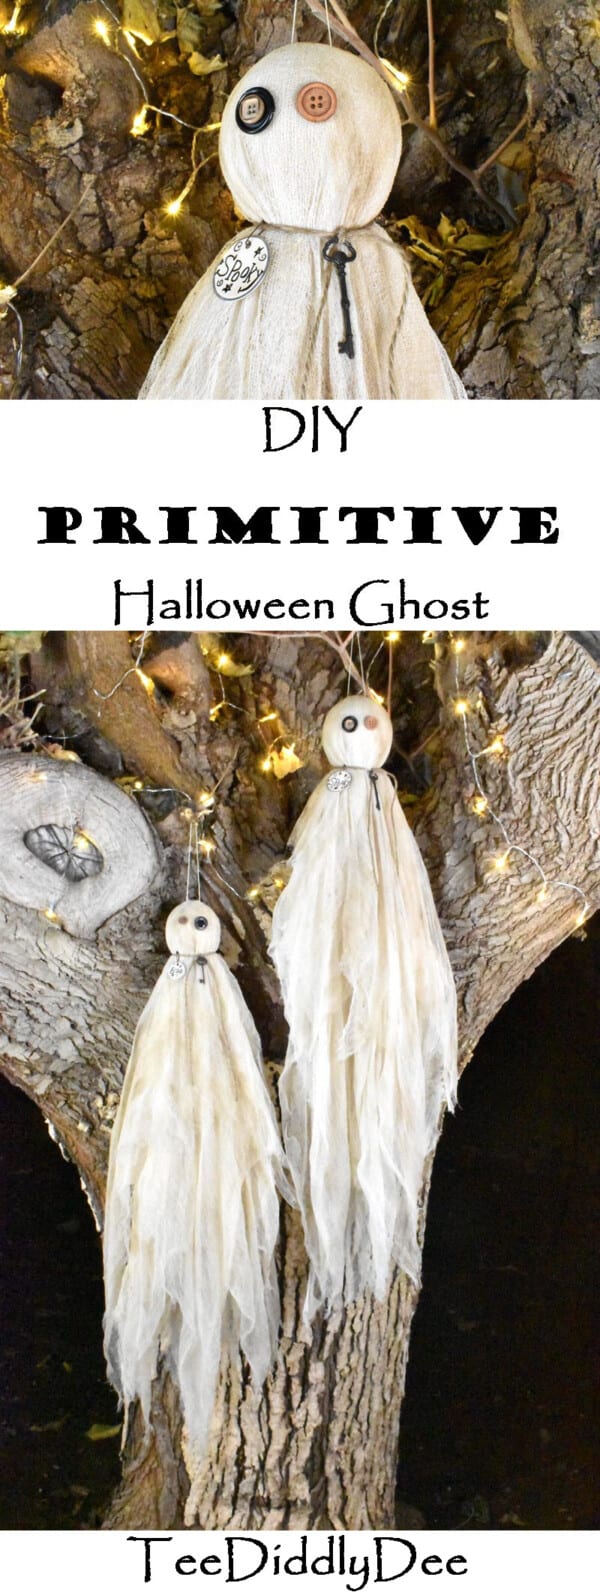 DIY Halloween Primitive Ghosts